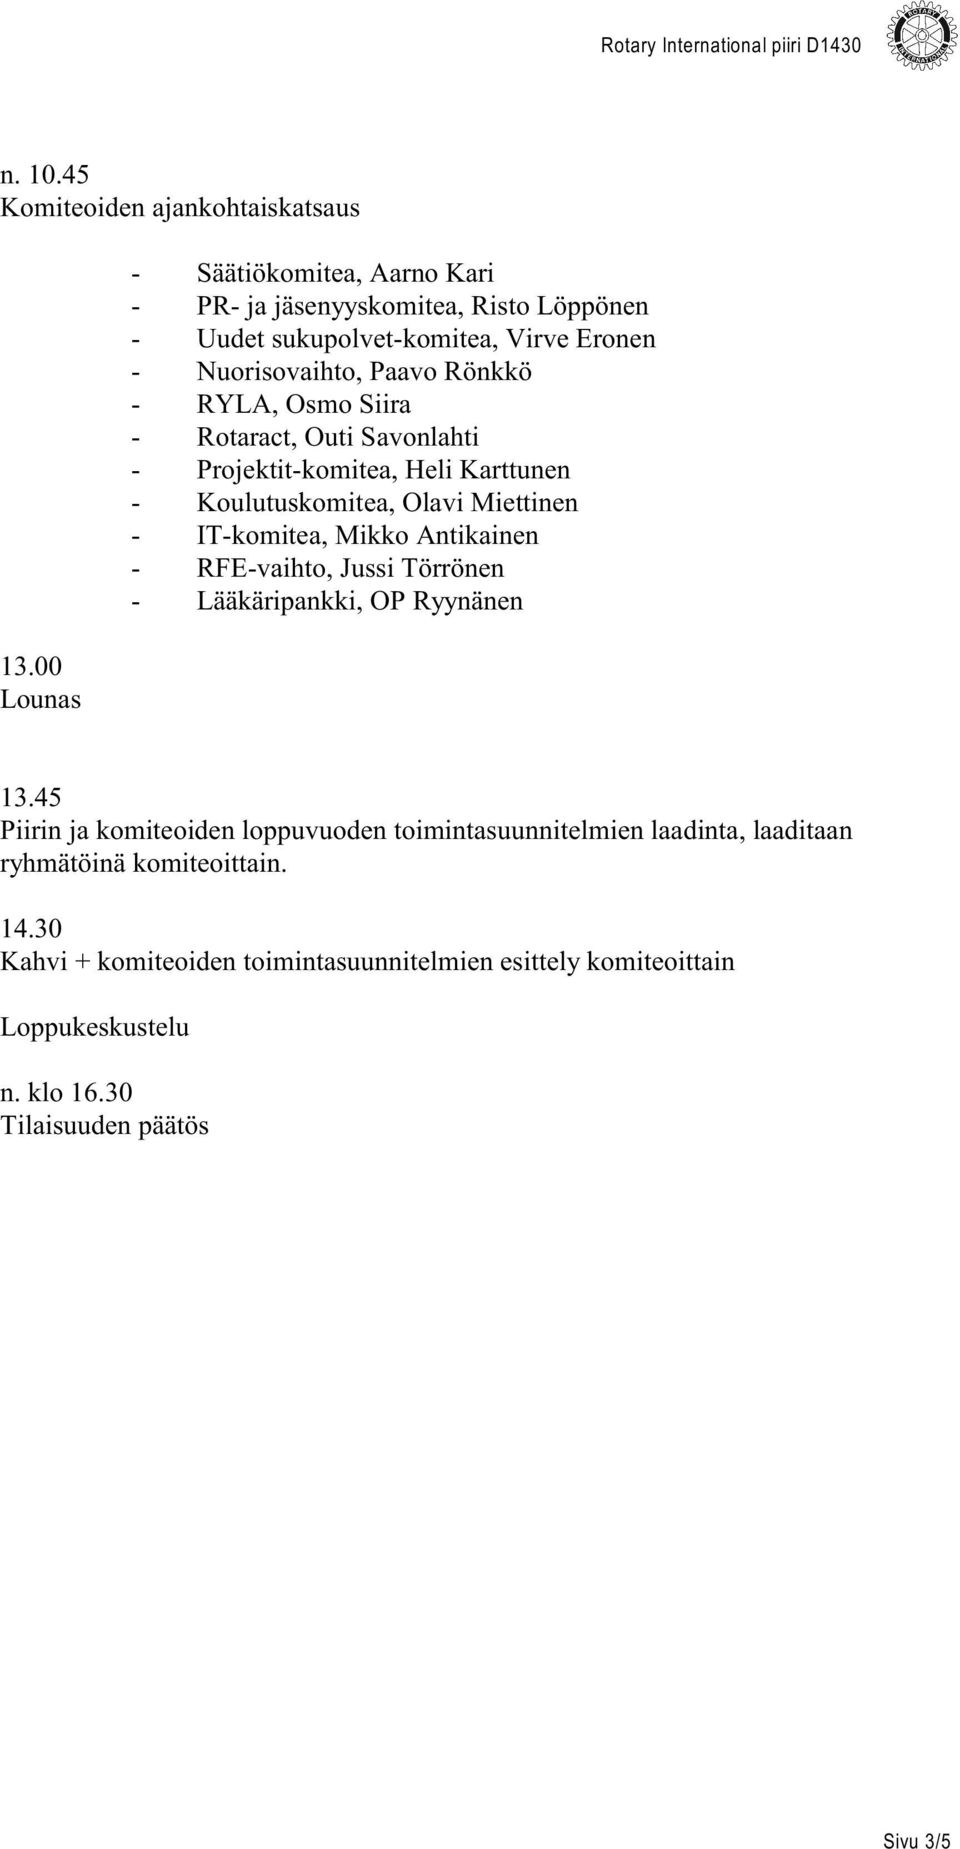 Osmo Siira - Rotaract, Outi Savonlahti - Projektit-komitea, Heli Karttunen - Koulutuskomitea, Olavi Miettinen - IT-komitea, Mikko Antikainen - RFE-vaihto,